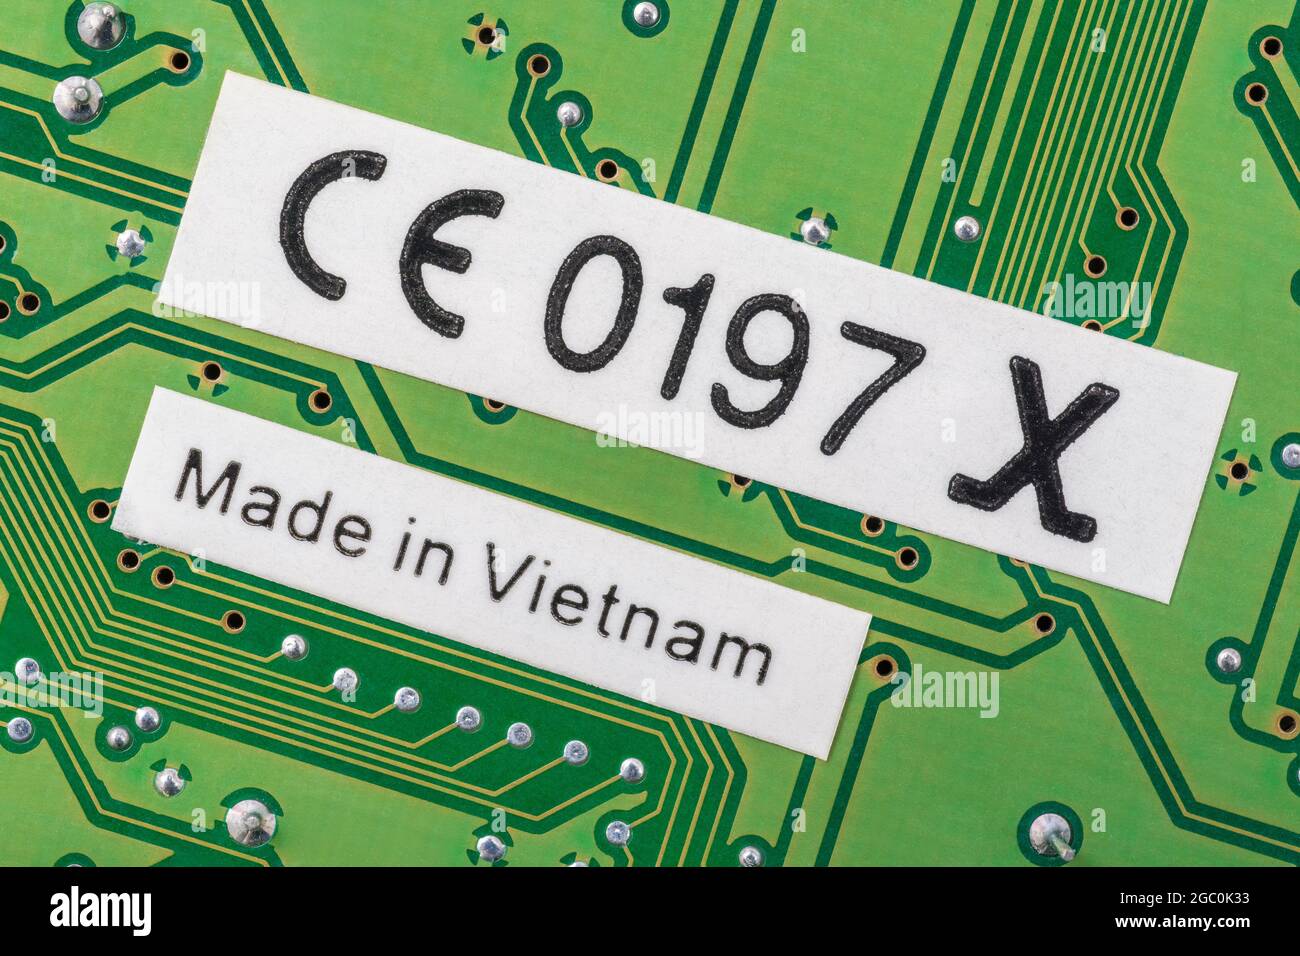 Fabriqué au Vietnam sur l'étiquette à l'arrière d'un ancien pcb vert. Pour l'industrie électronique mondiale, délocalisation de produits, métaphore de la pénurie de composants électroniques. Banque D'Images